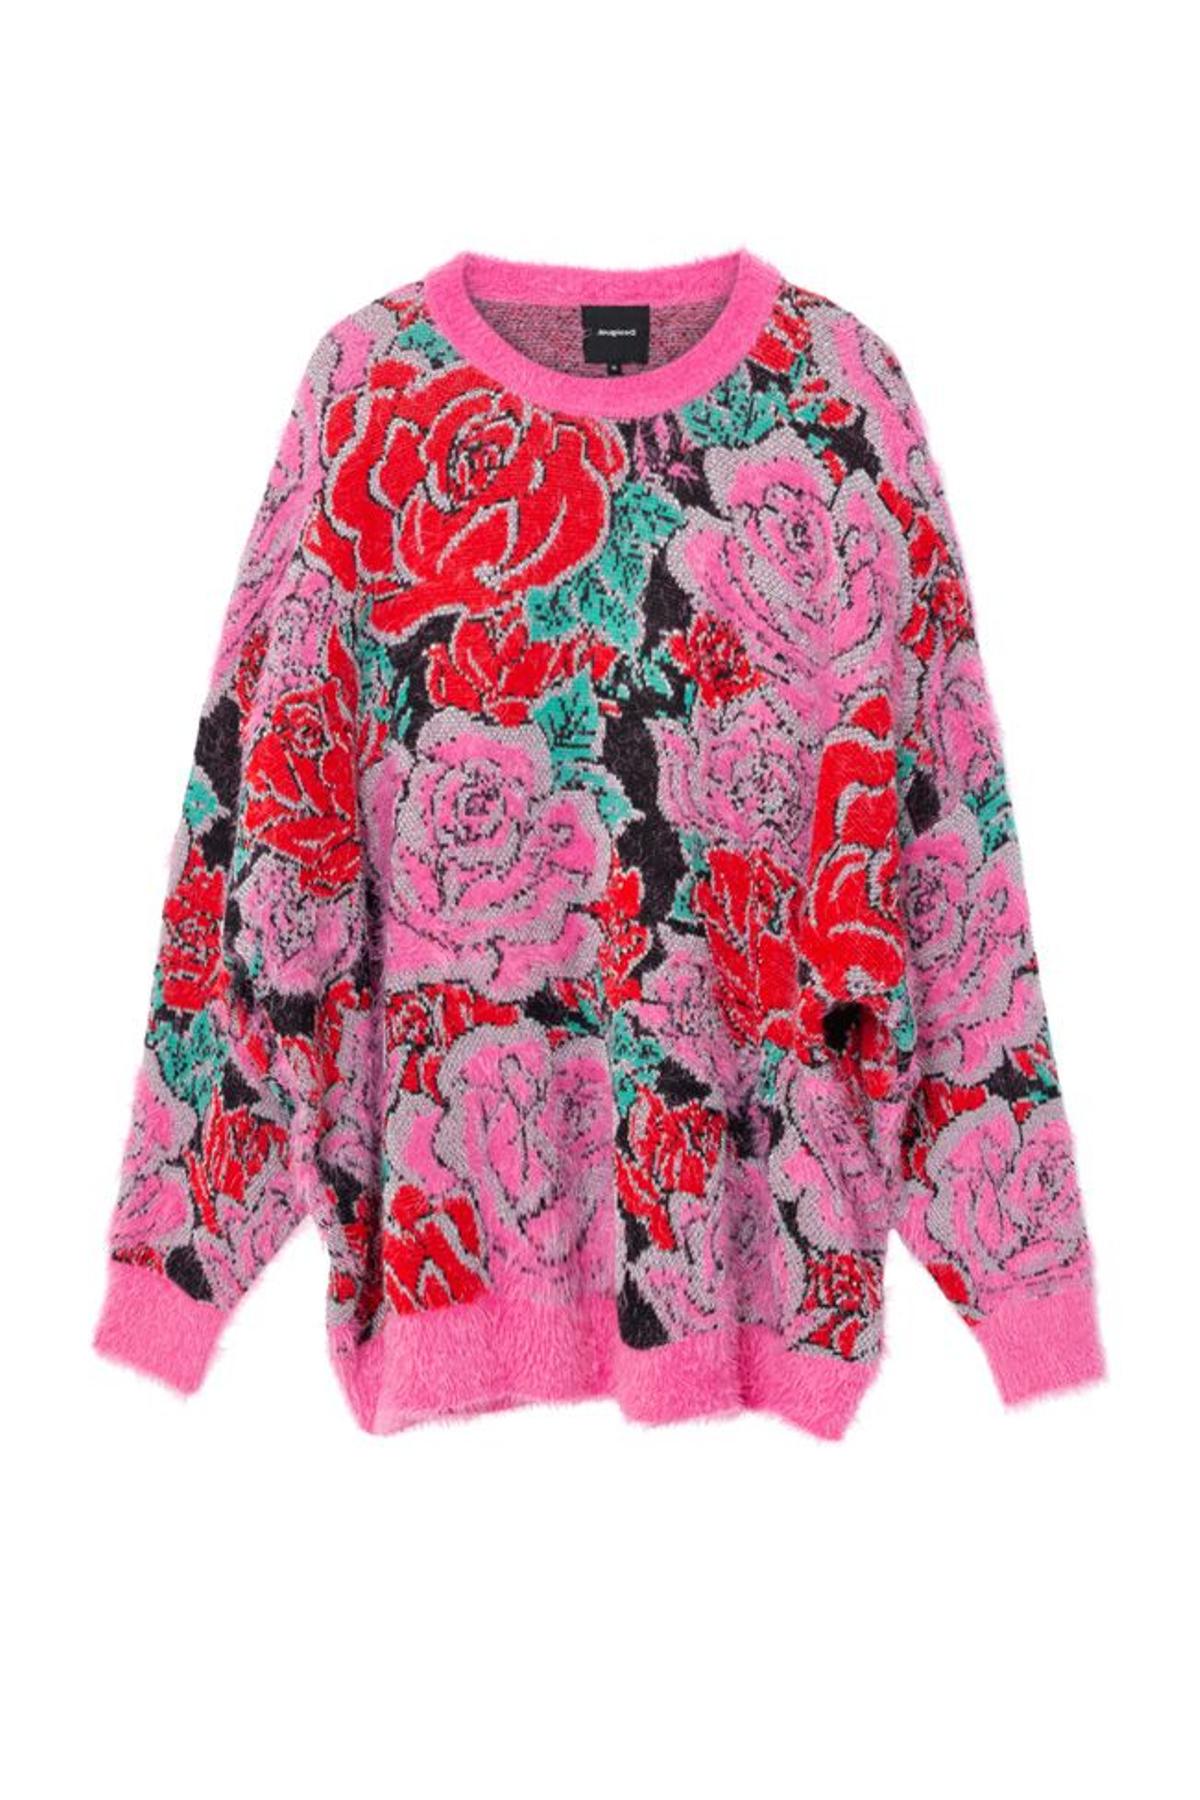 Jersey de tricot floral 'oversize'